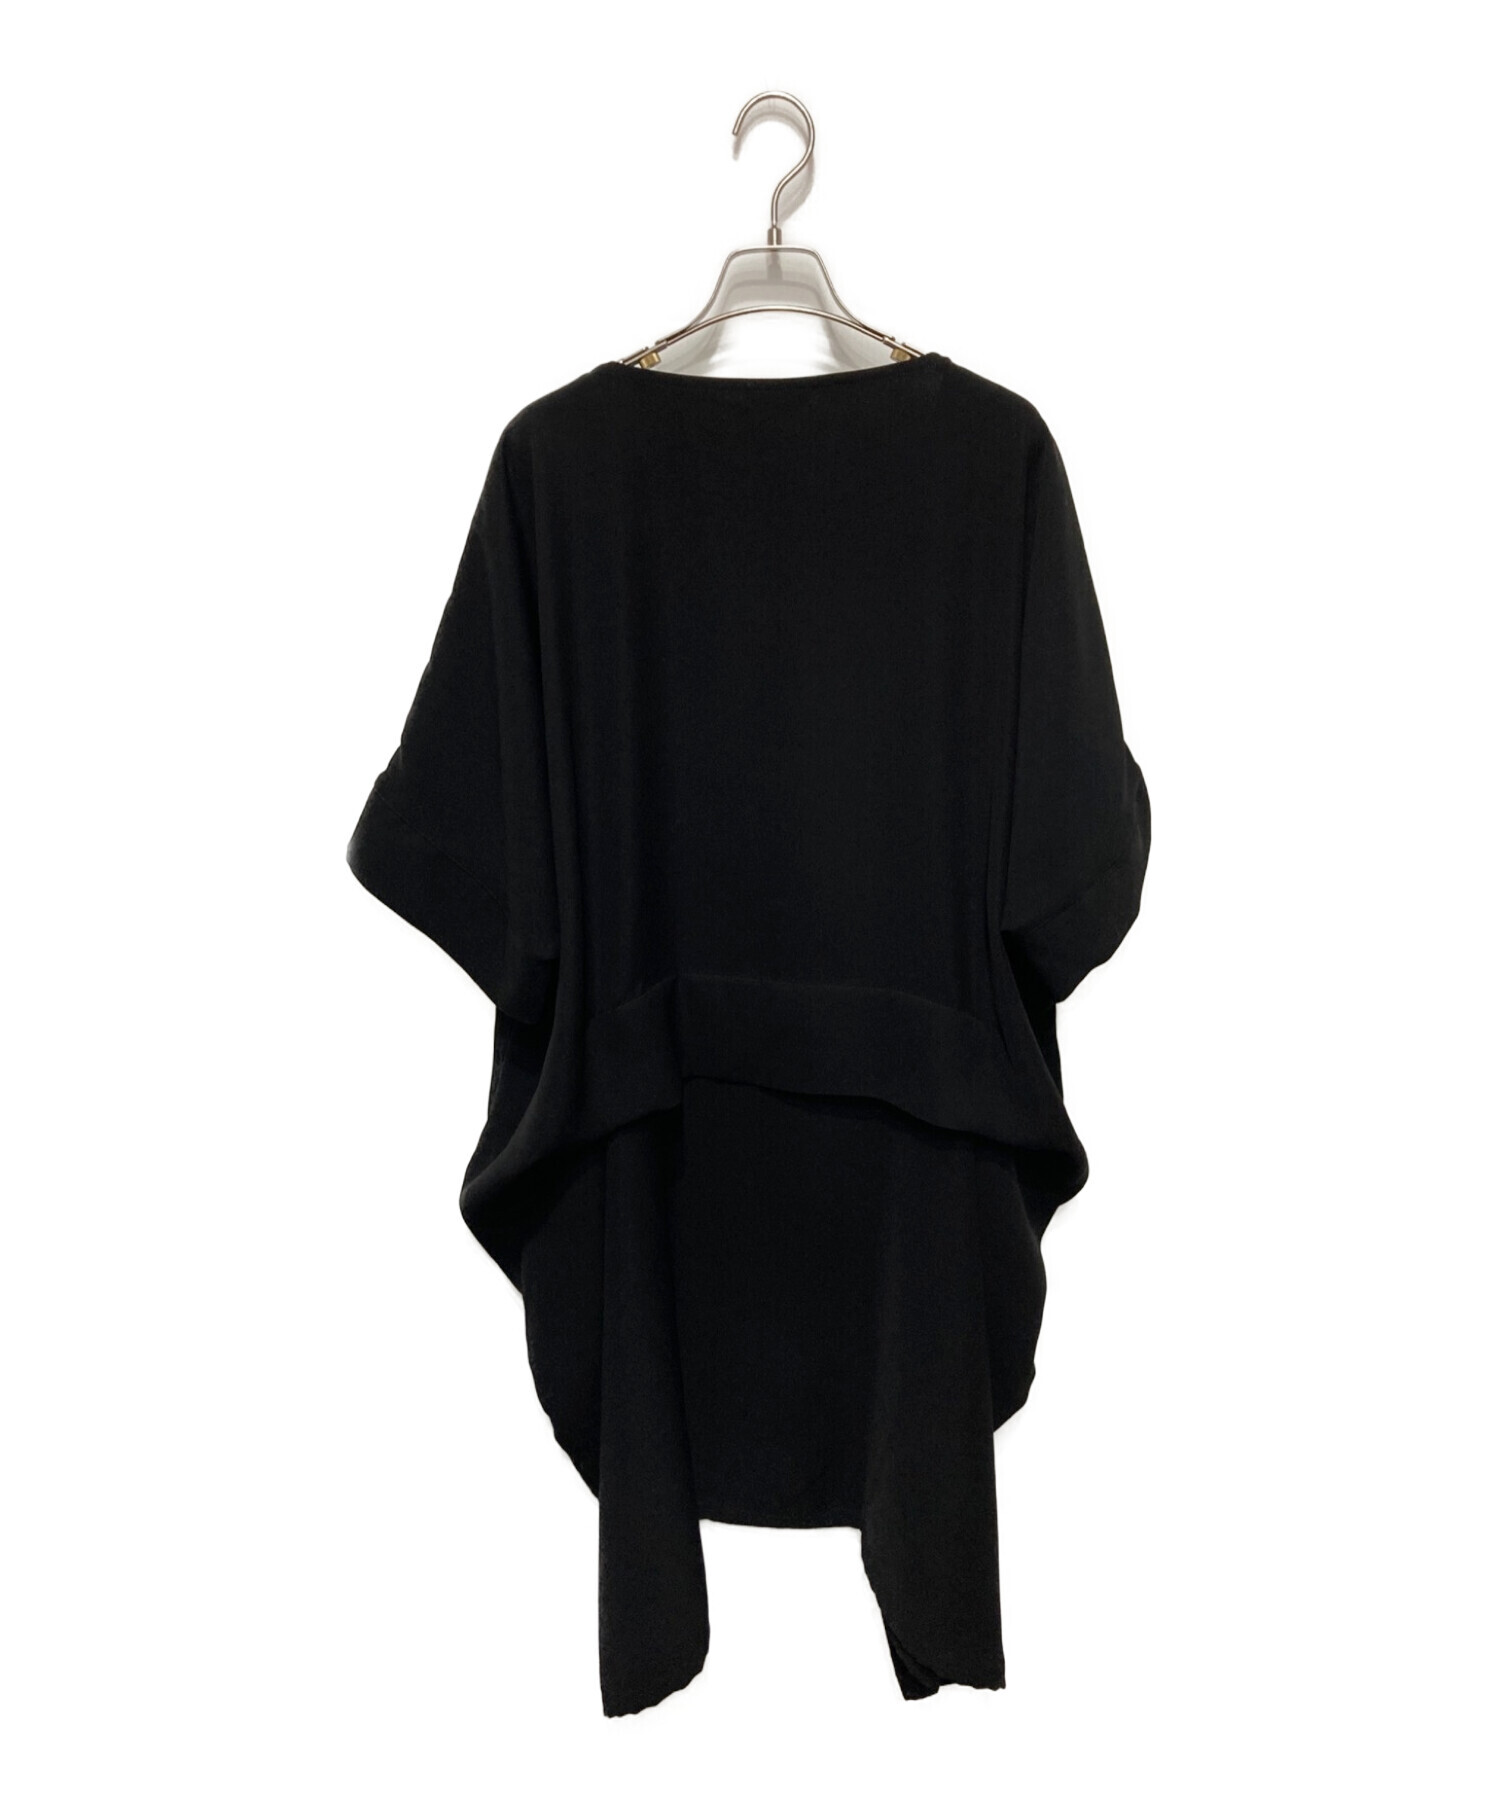 LIMI feu (リミフゥ) Double Satin Dropped Pocket Dress/ダブルサテンドロップドポケットドレス ブラック  サイズ:S